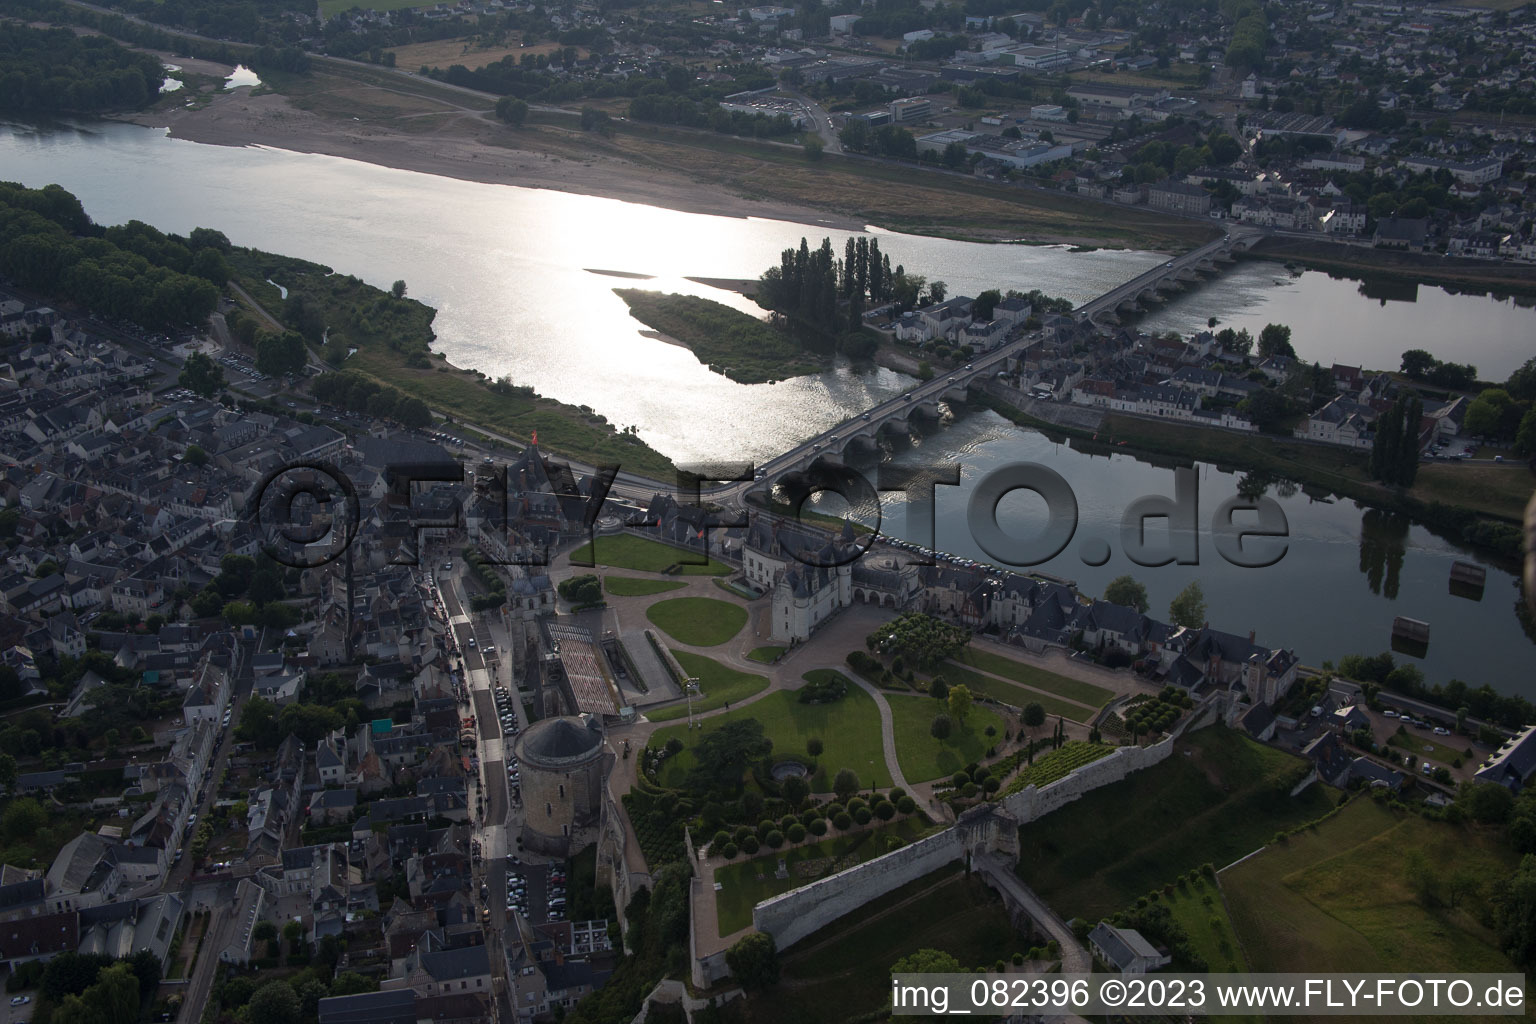 Amboise dans le département Indre et Loire, France vu d'un drone